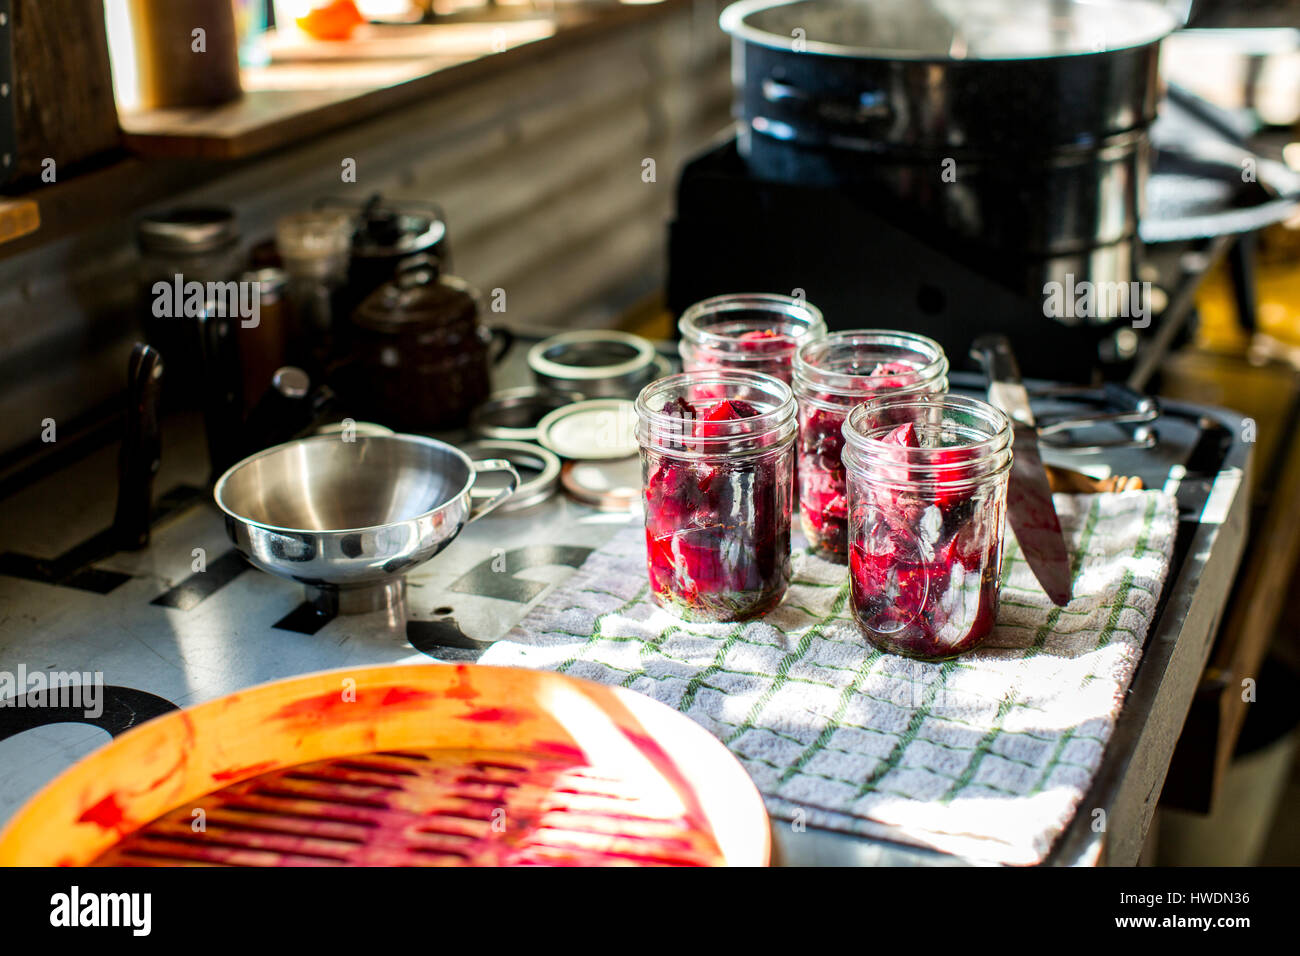 Gläser mit rote Bete auf Geschirrtuch in Küche bewahrt Stockfoto